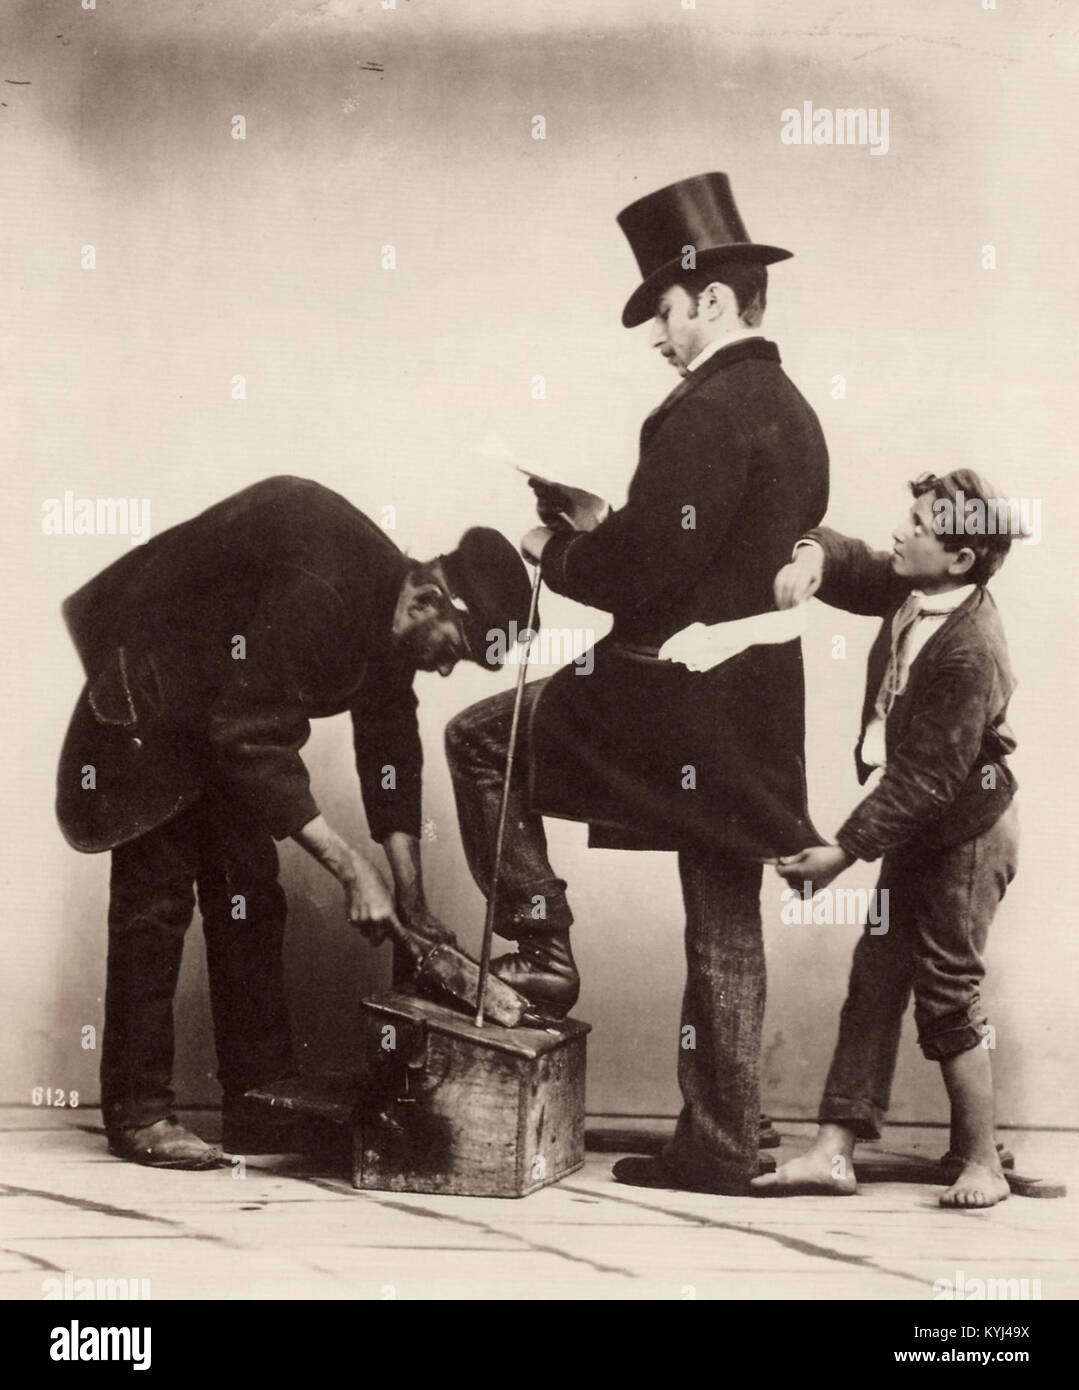 Sommer, Giorgio (1834-1914) - n. 6128 - Napoli, sciuscià e borseggiatore  Foto stock - Alamy